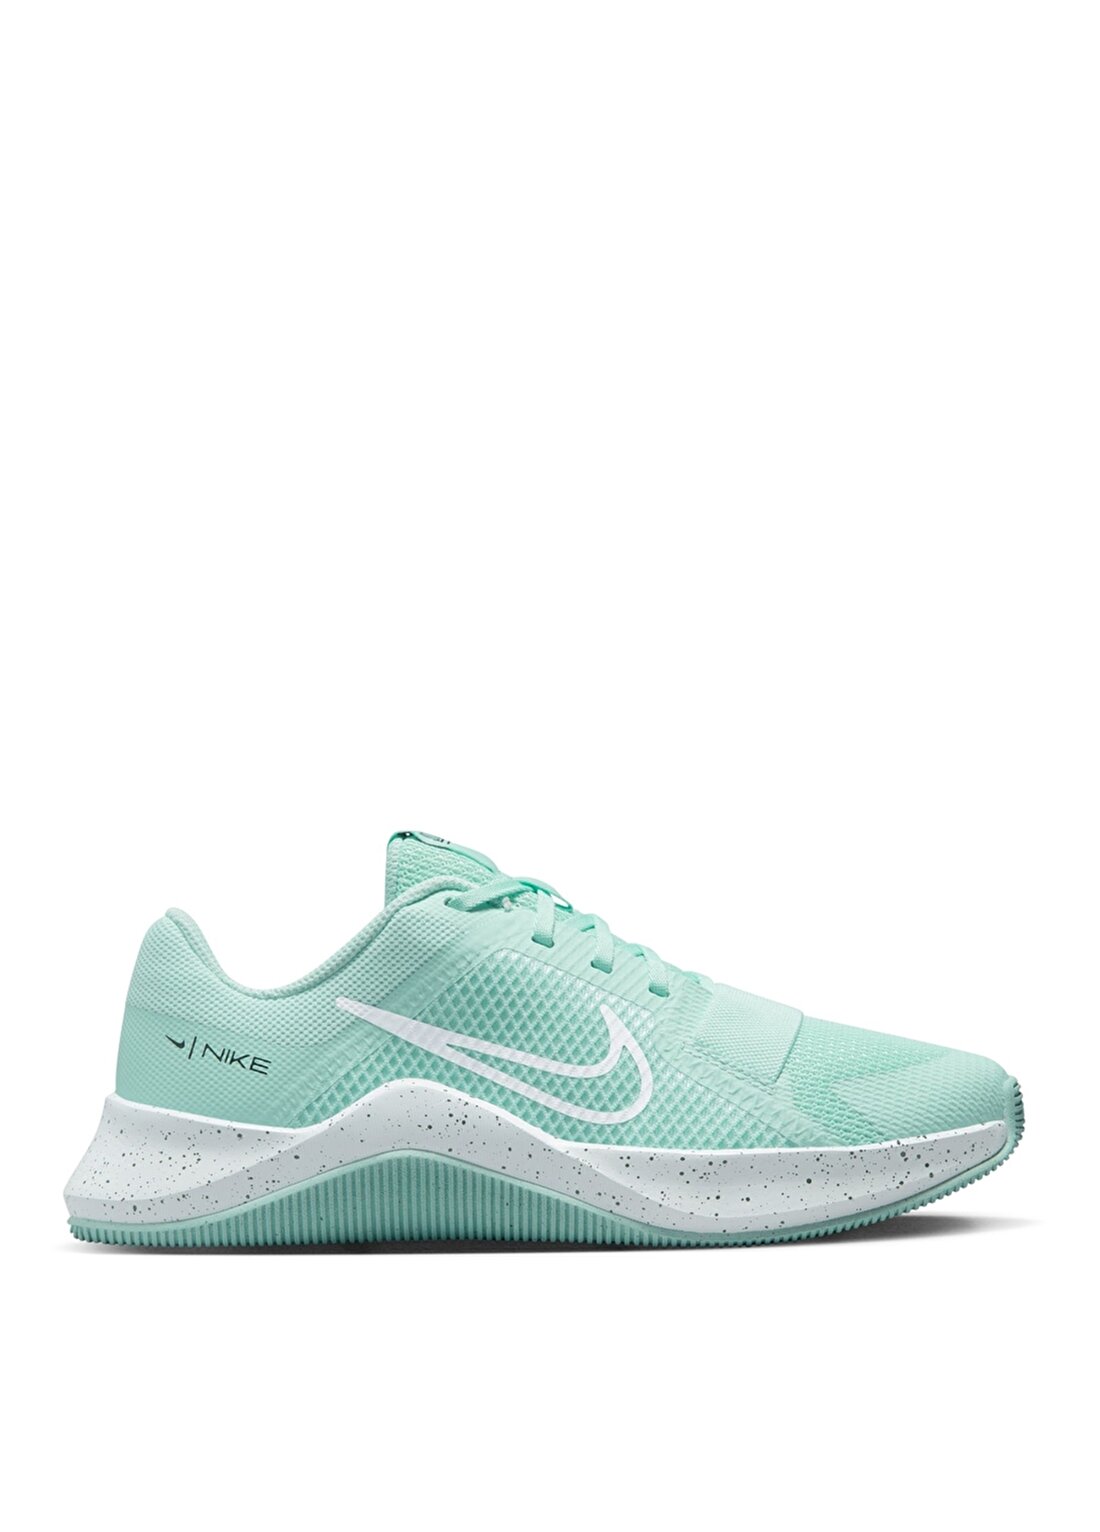 Nike Yeşil Kadın Training Ayakkabısı DM0824-300 W MC TRAINER 2